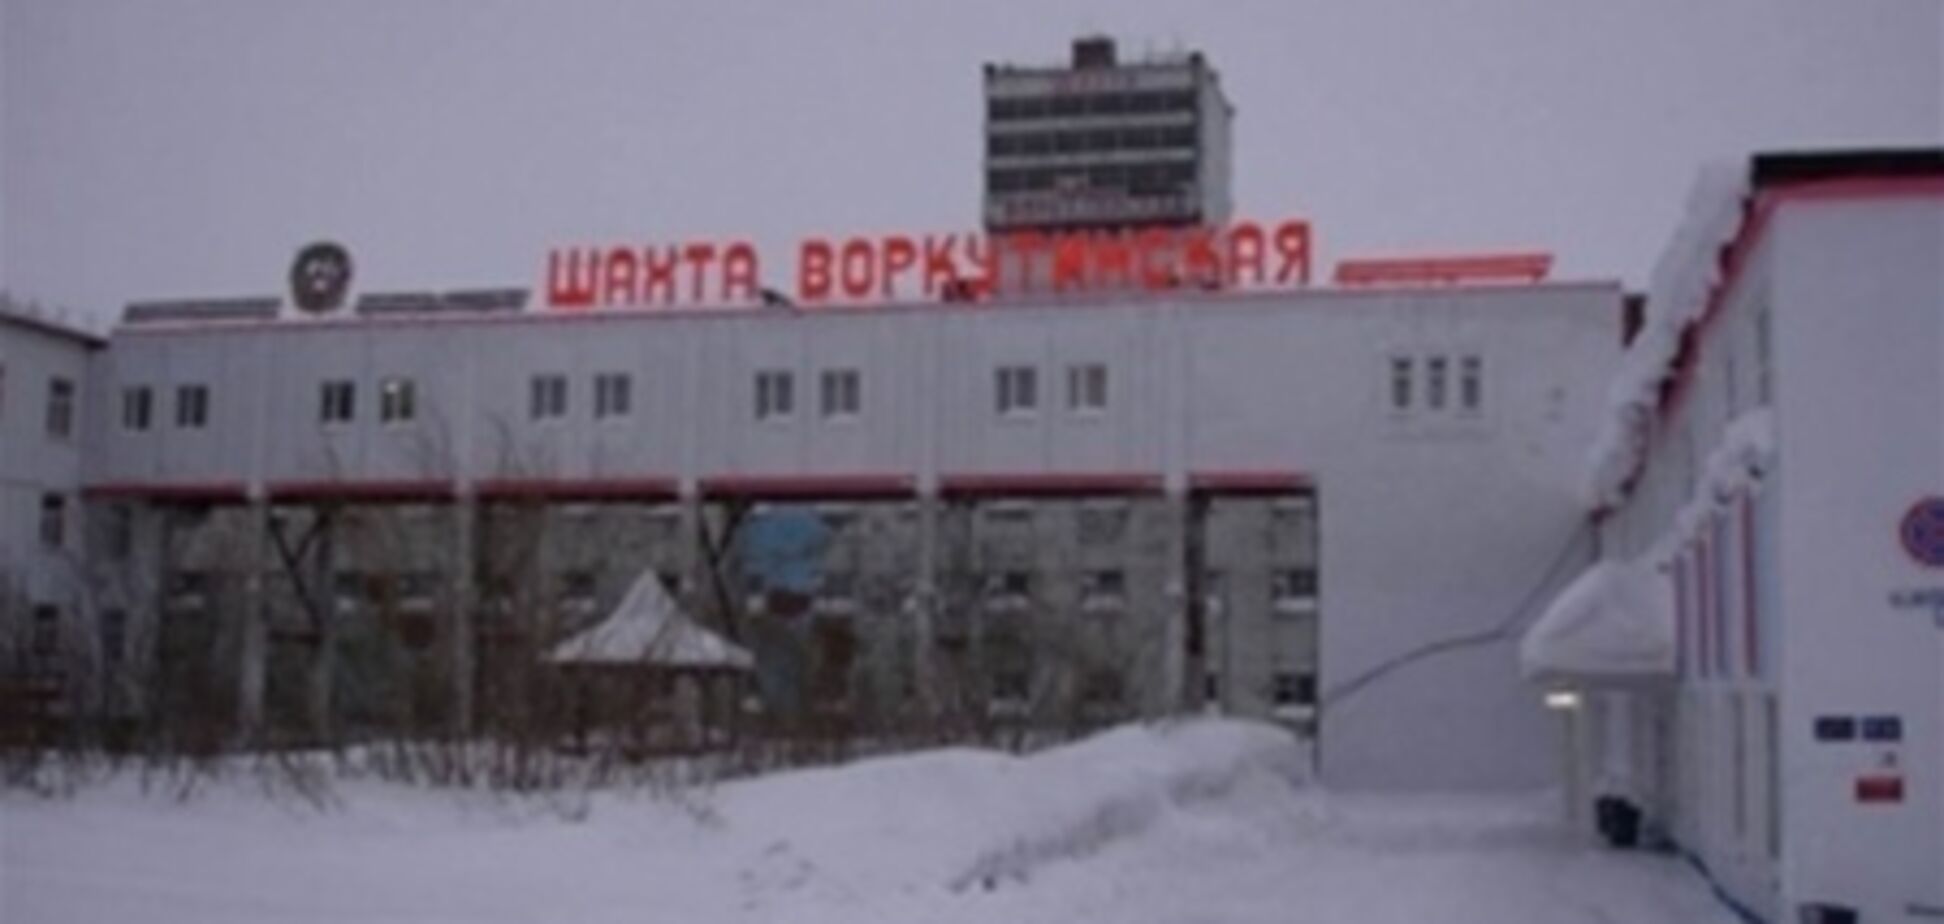 Количество жертв на российской шахте достигло 16